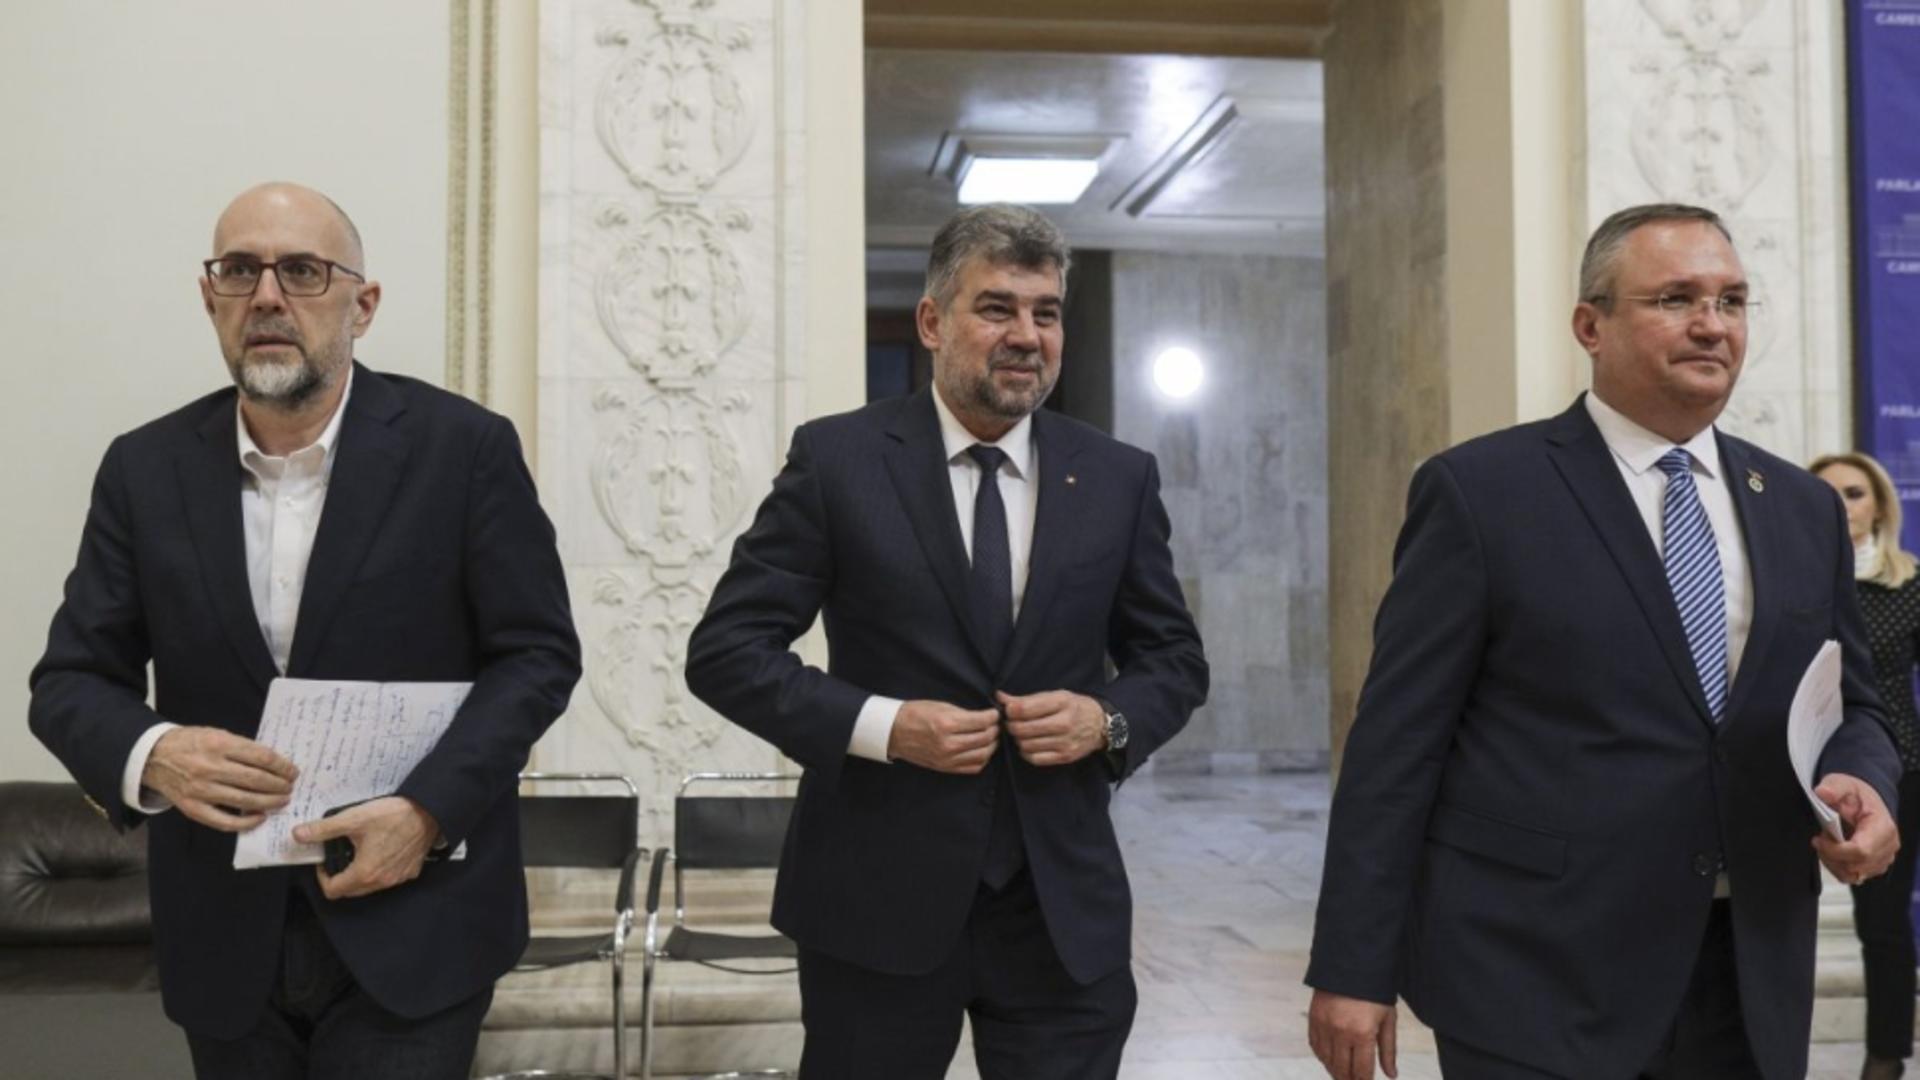 Tensiune MAXIMĂ: ore decisive pentru noul Guvern - Un lider PNL cere RUPEREA coaliției cu PSD